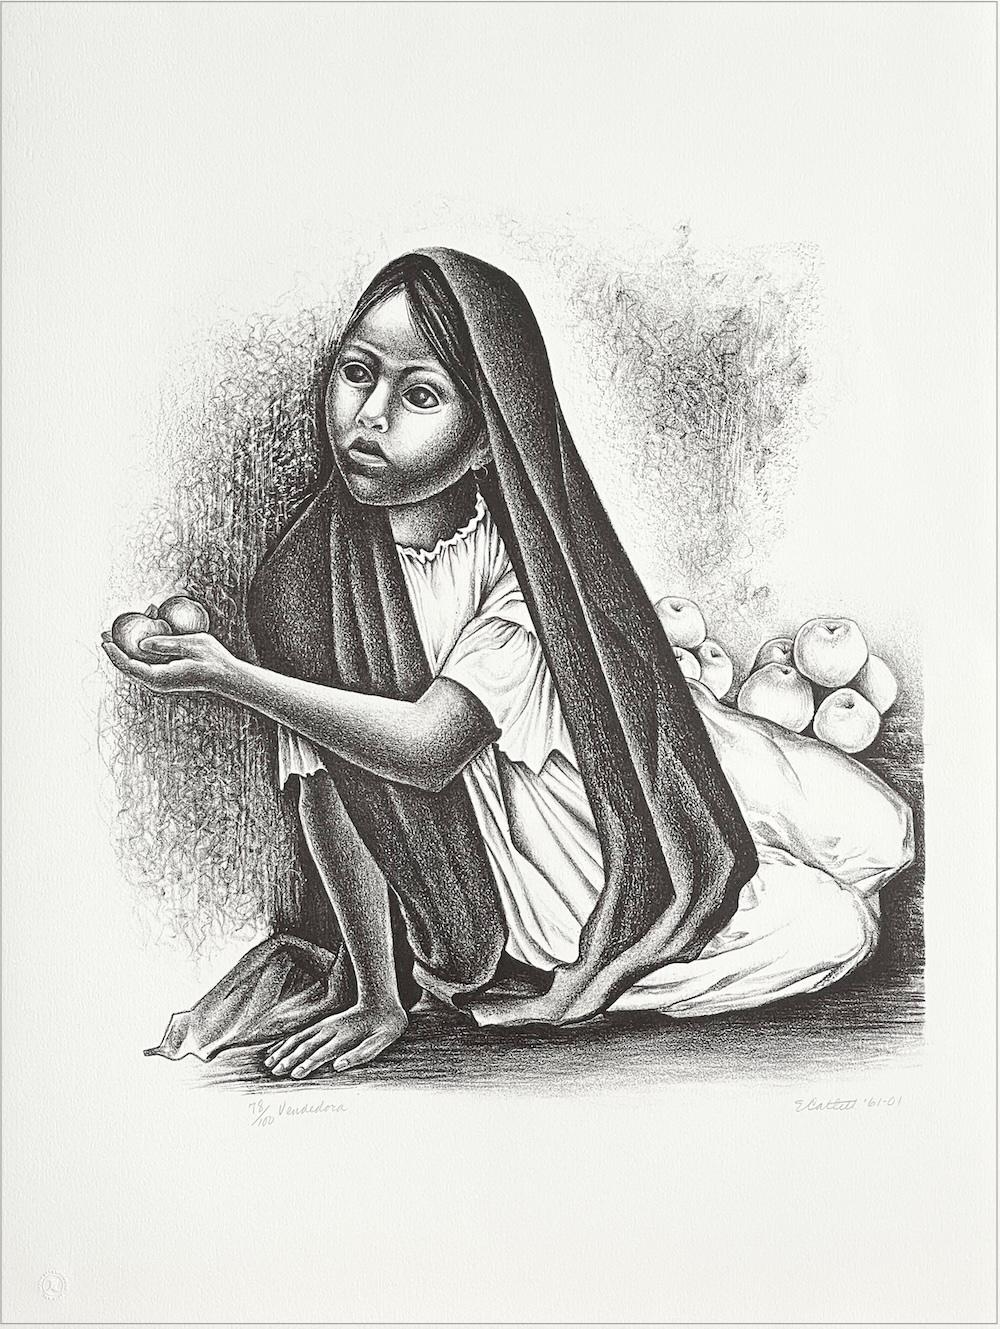 Signierte Lithographie von VENDEDORA, Porträt eines sitzenden jungen Mädchens, mexikanischer Obstverkäufer